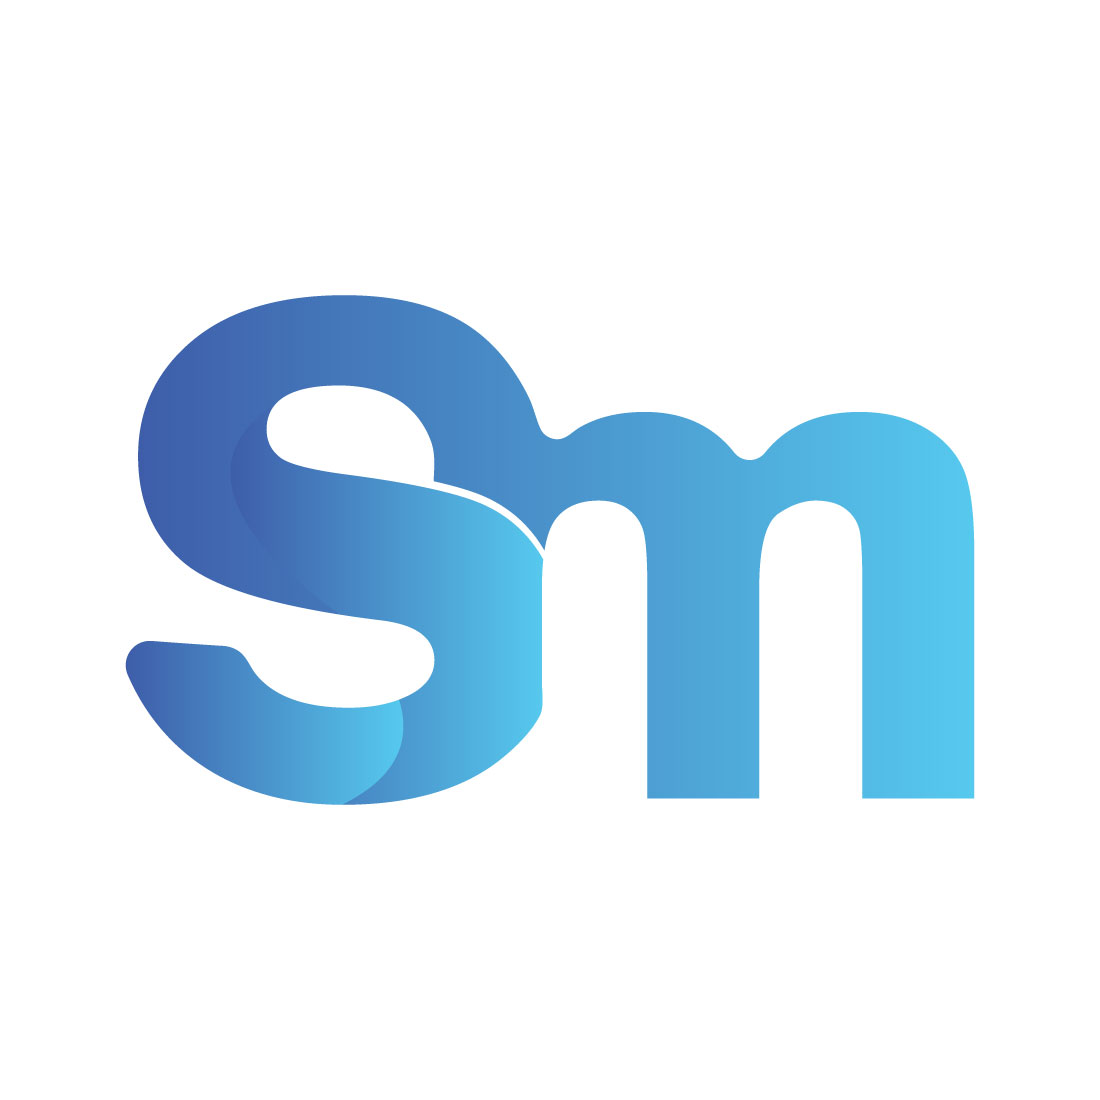 S M Letter Logo main cover.